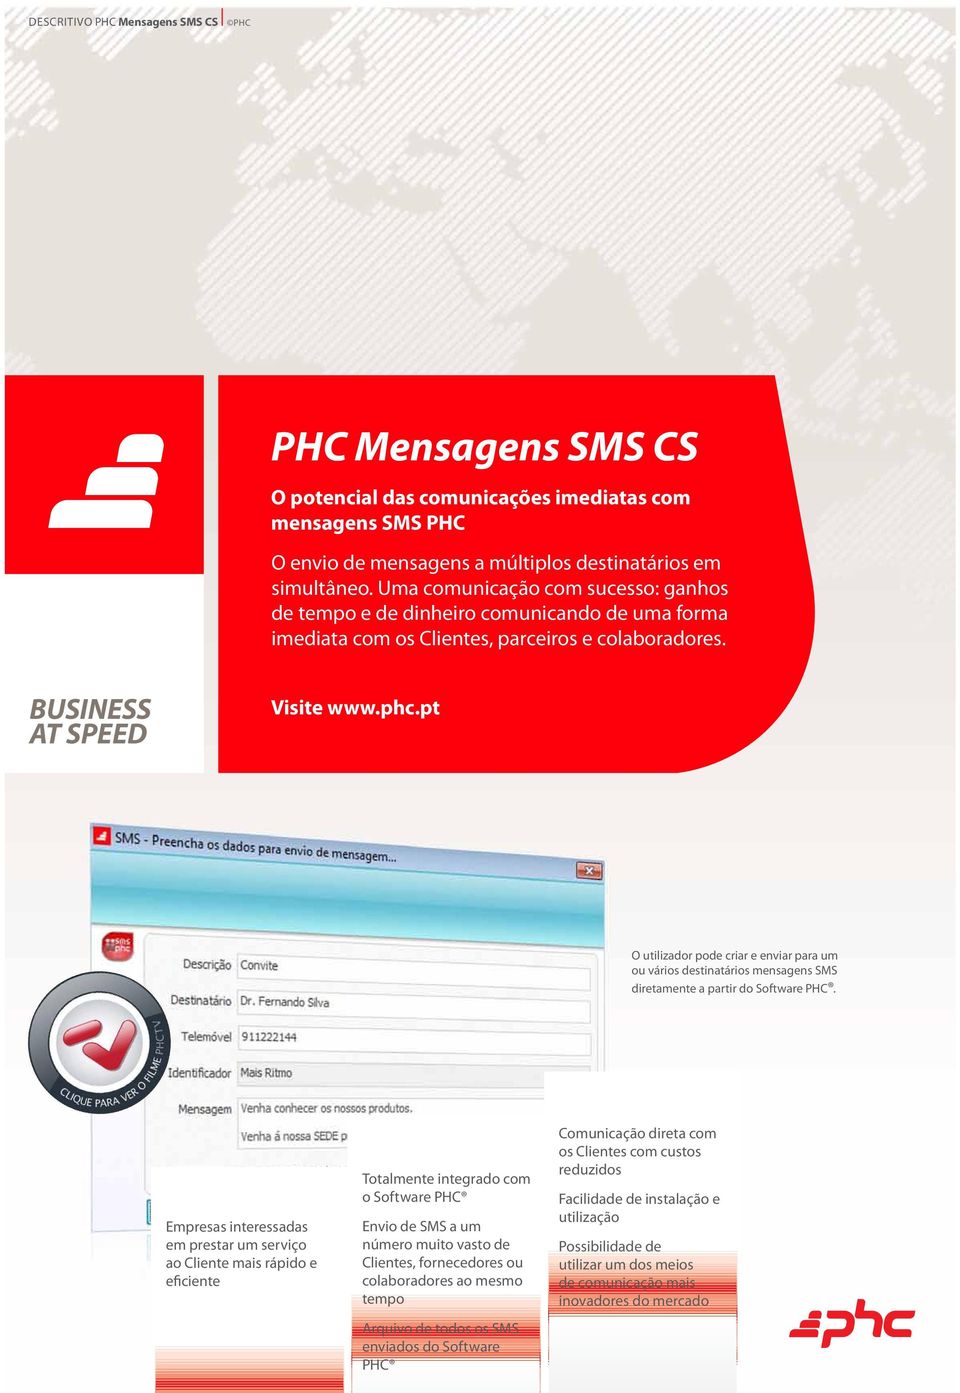 pt O utilizador pode criar e enviar para um ou vários destinatários mensagens SMS diretamente a partir do Software PHC.